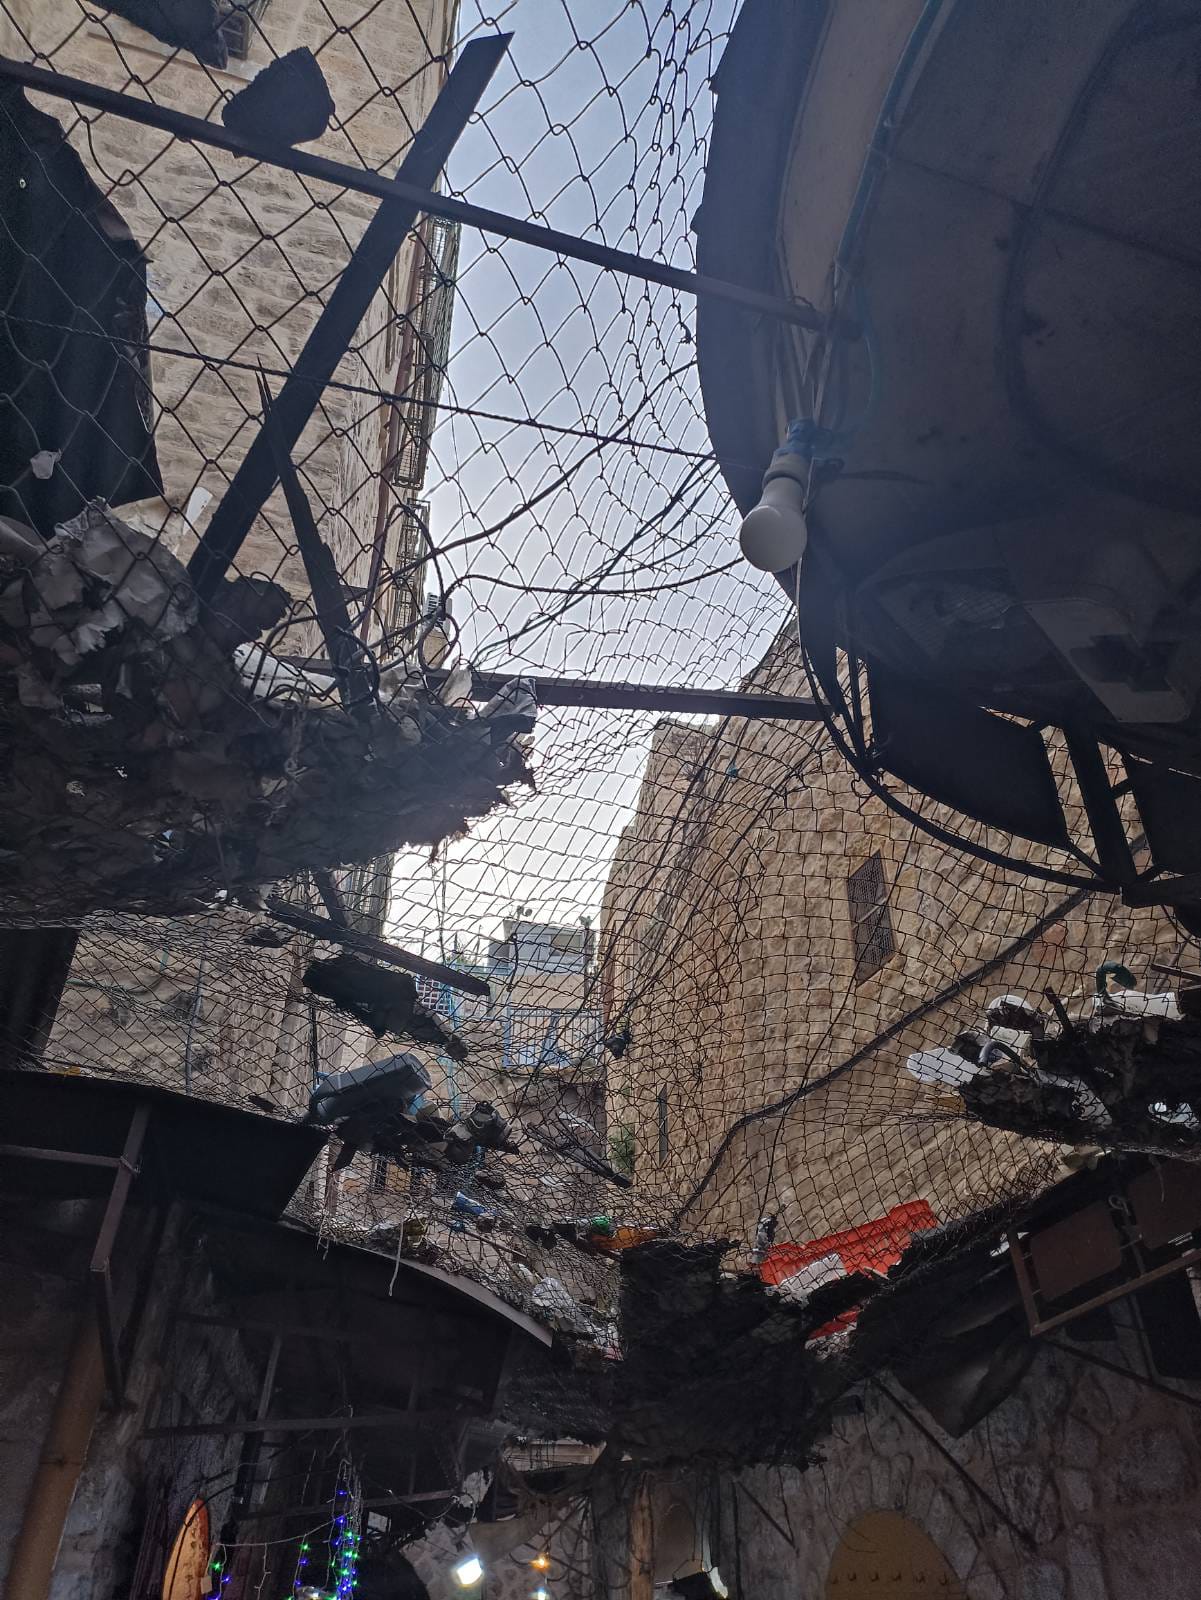 Eine israelische Siedlung direkt über einer Marktstraße in der Altstadt von Hebron. Palästinenser:innen mussten Gitter aufstellen, um sich vor dem Müll zu schützen, den die Siedler:innen auf sie werfen. Foto: Izzat Karaki